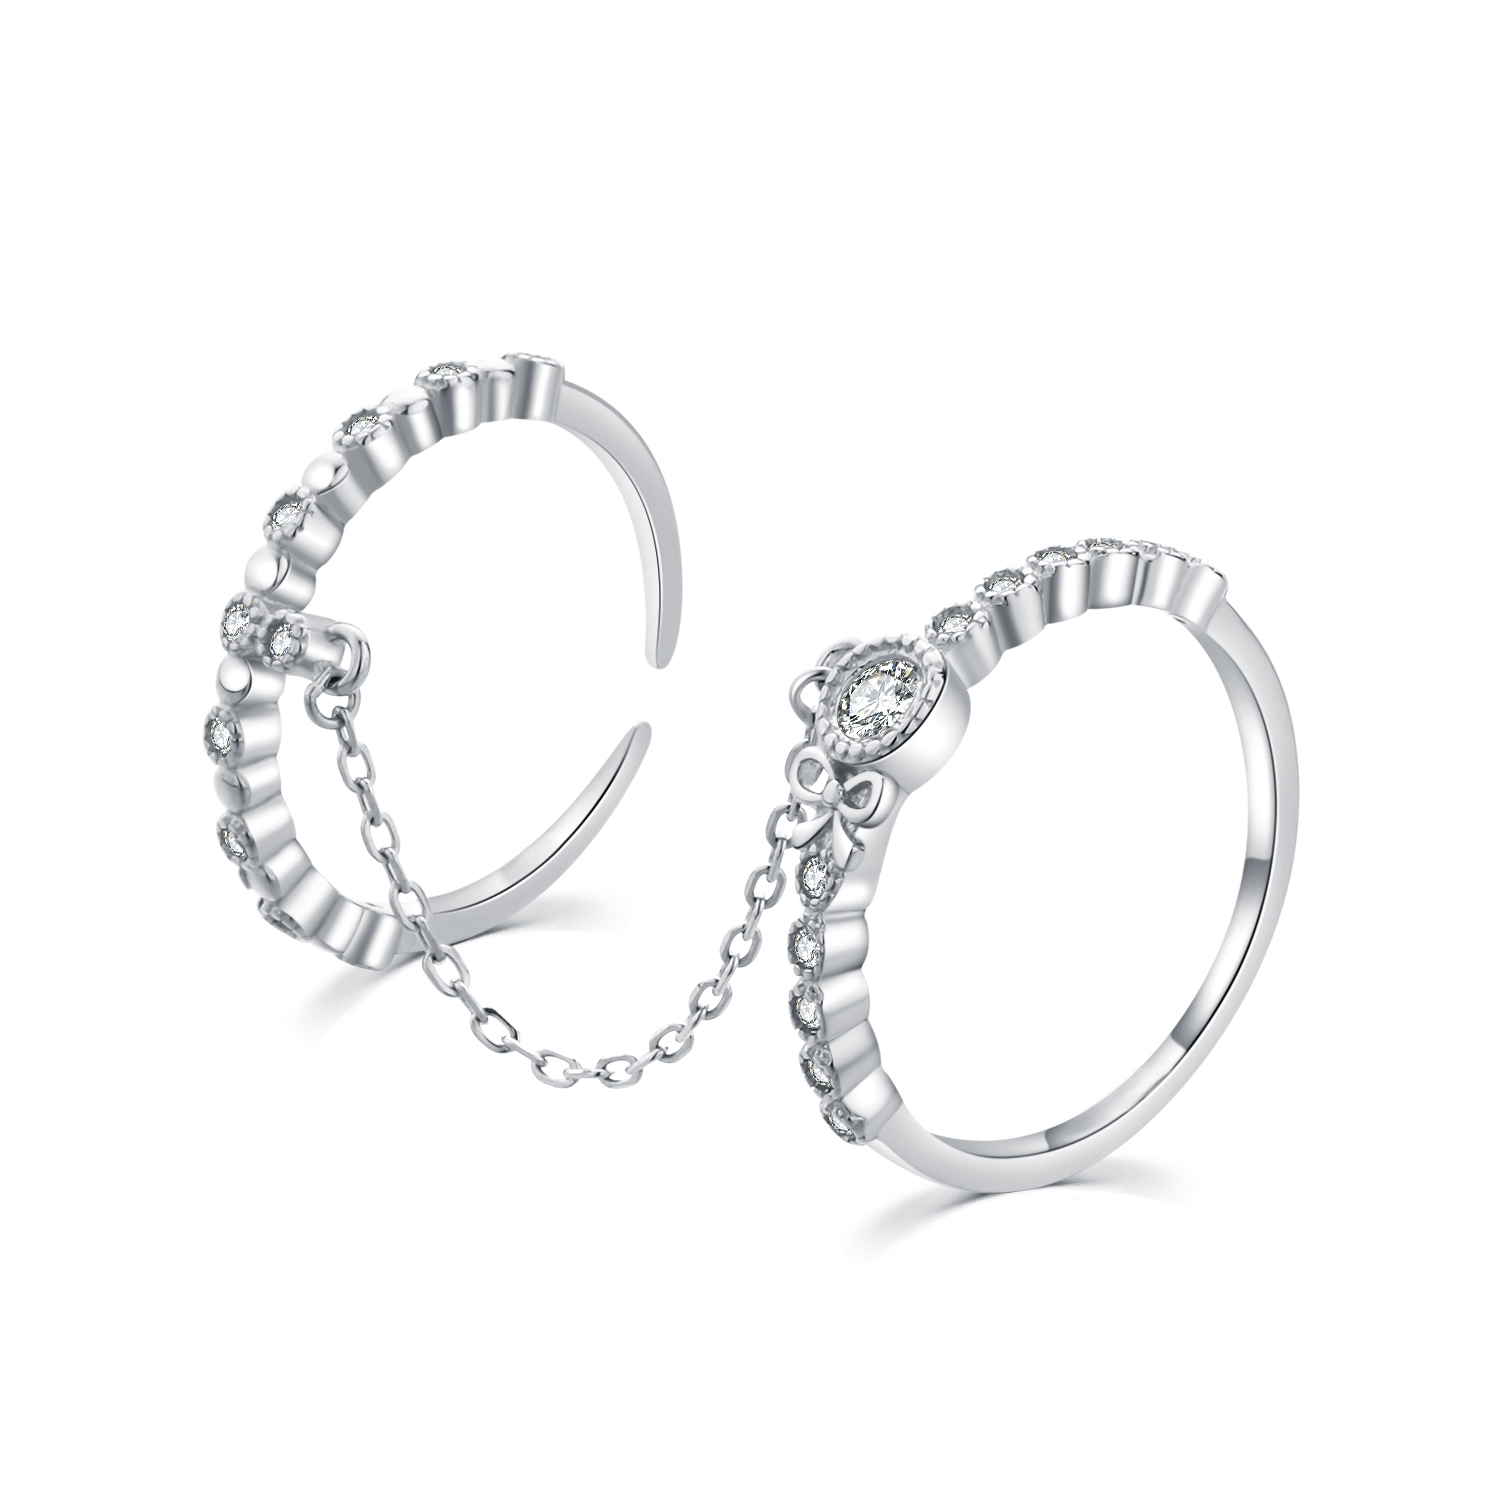 MOISS Moiss stříbrný prsten propojený řetízkem DUO BEAUTY III. R0002206 Velikost 54 mm R0002208